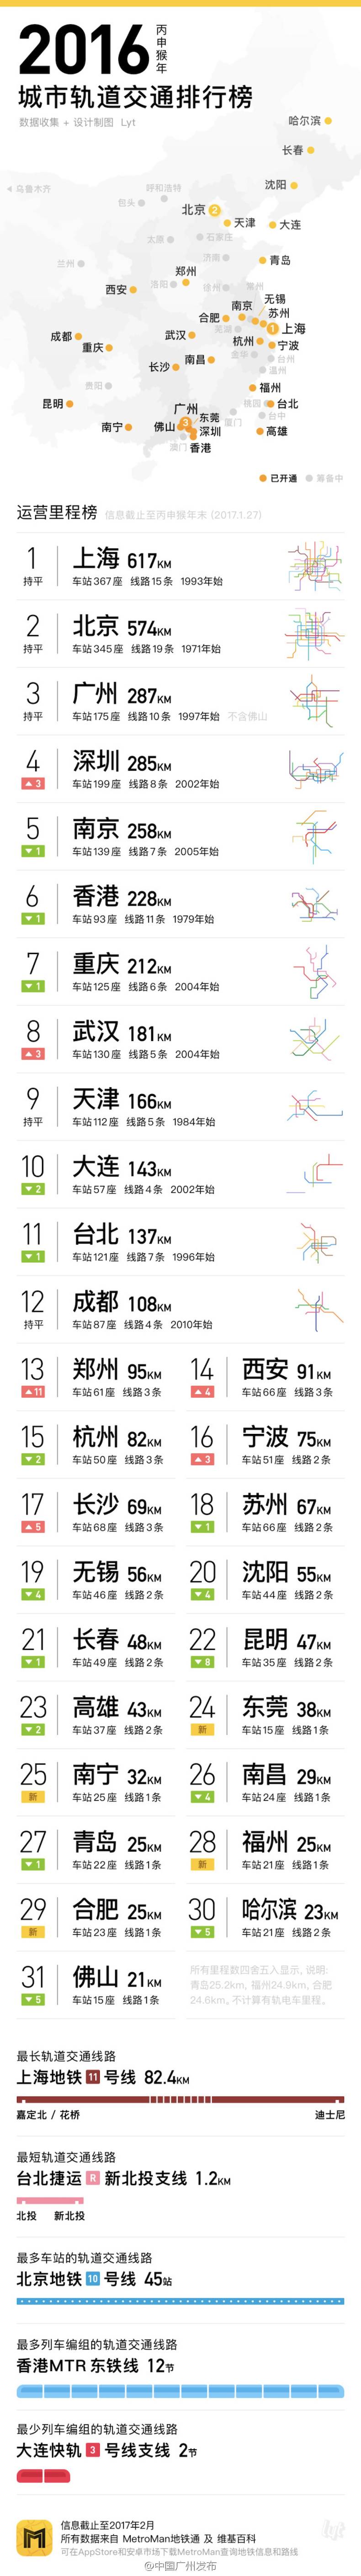 深圳地铁里程排名_深圳地铁迈入“400公里时代”,这只是个“小目标”